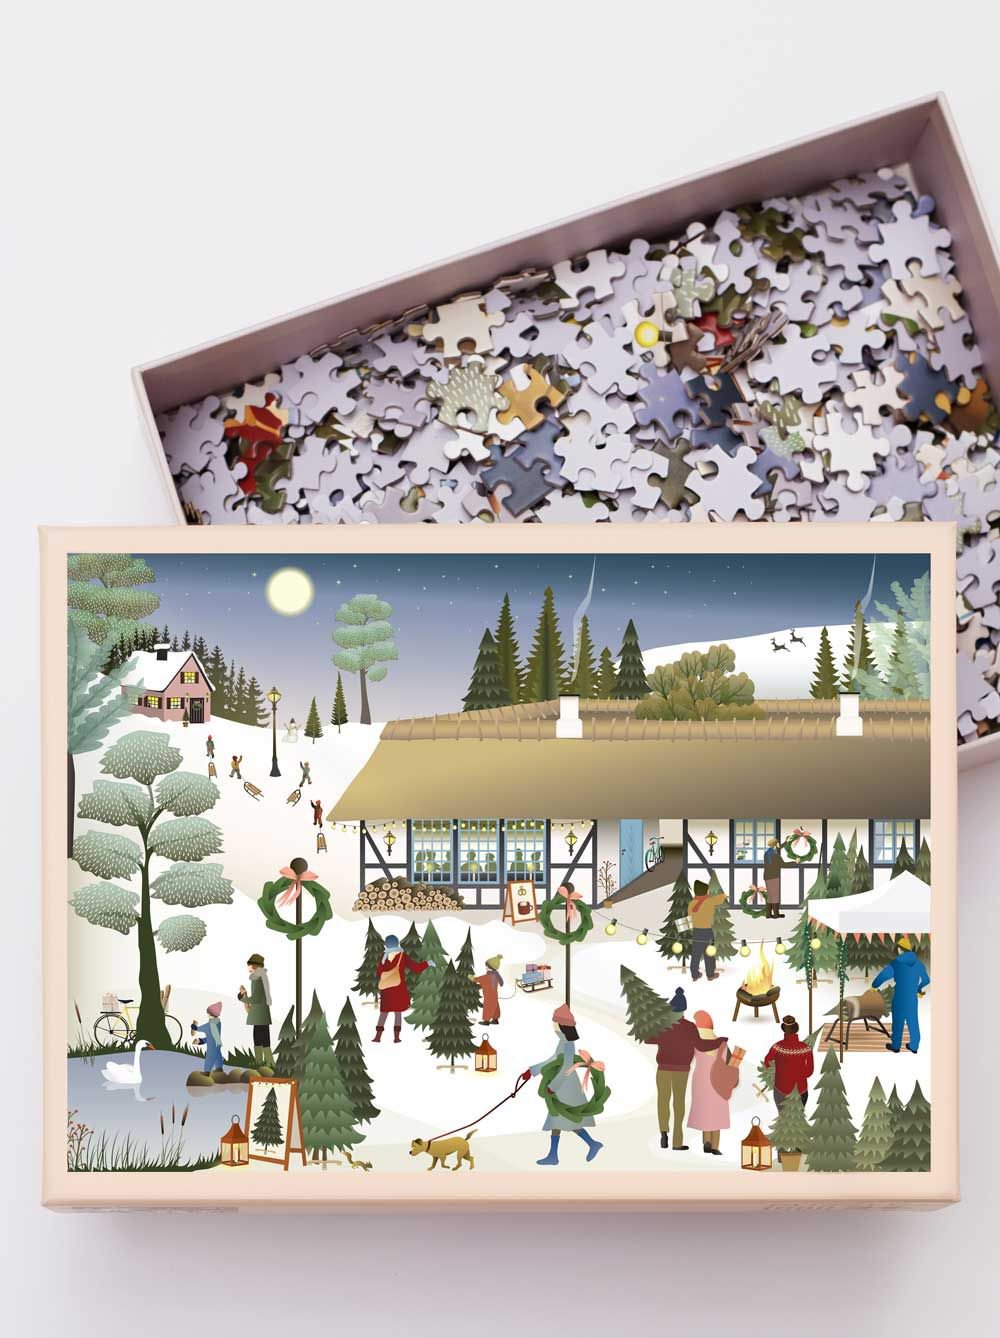 Vissevasse Kerstboomboerderij puzzel met 1000 stuks